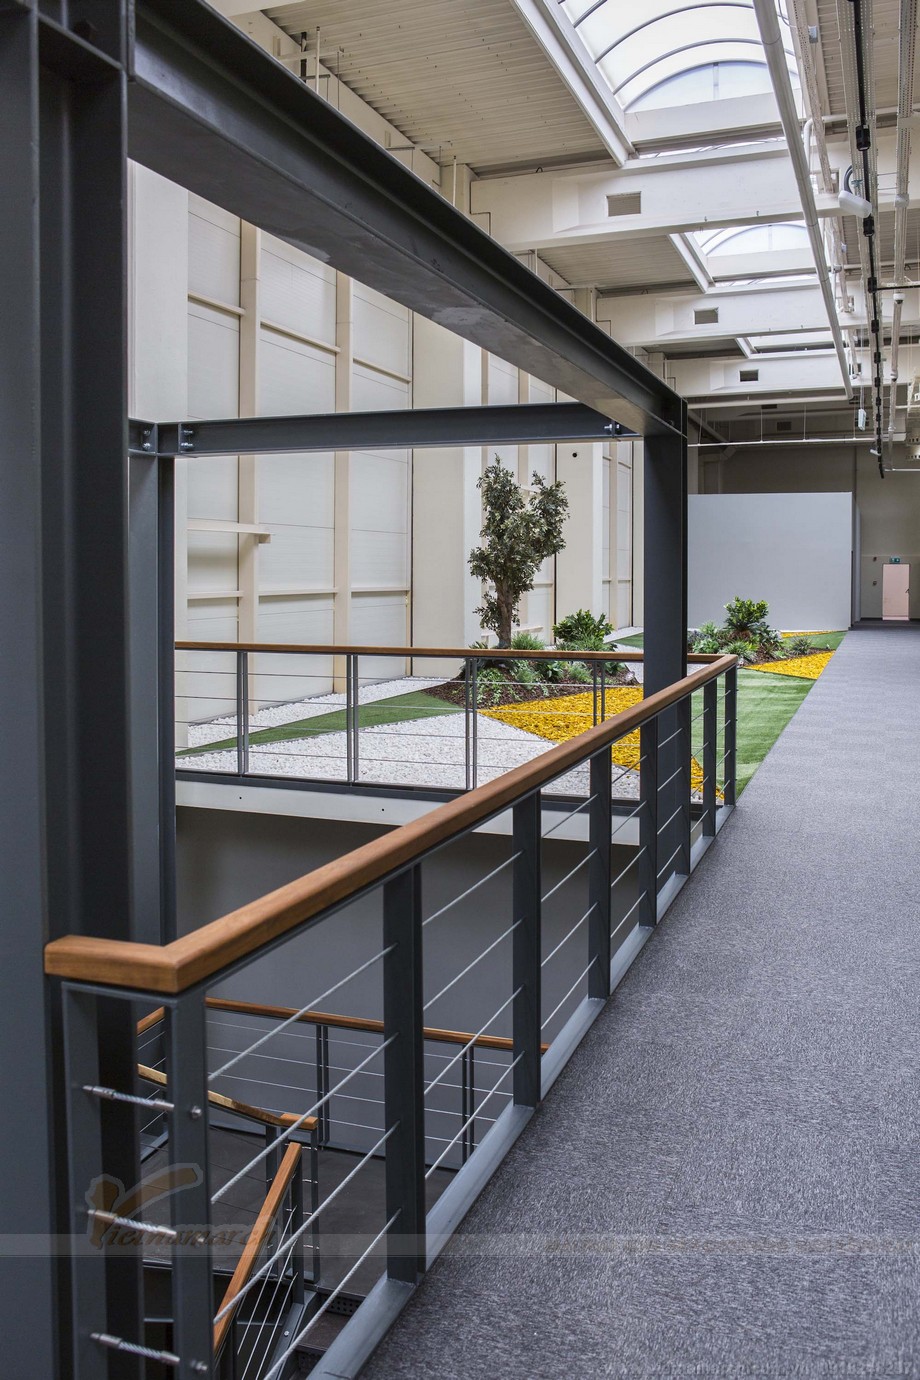 Dự án coworking space được đầu tư lớn nhất vào thiết kế nội thất > Không gian bên ngoài văn phòng  cũng được thiết kế chau chuốt đẹp mắt